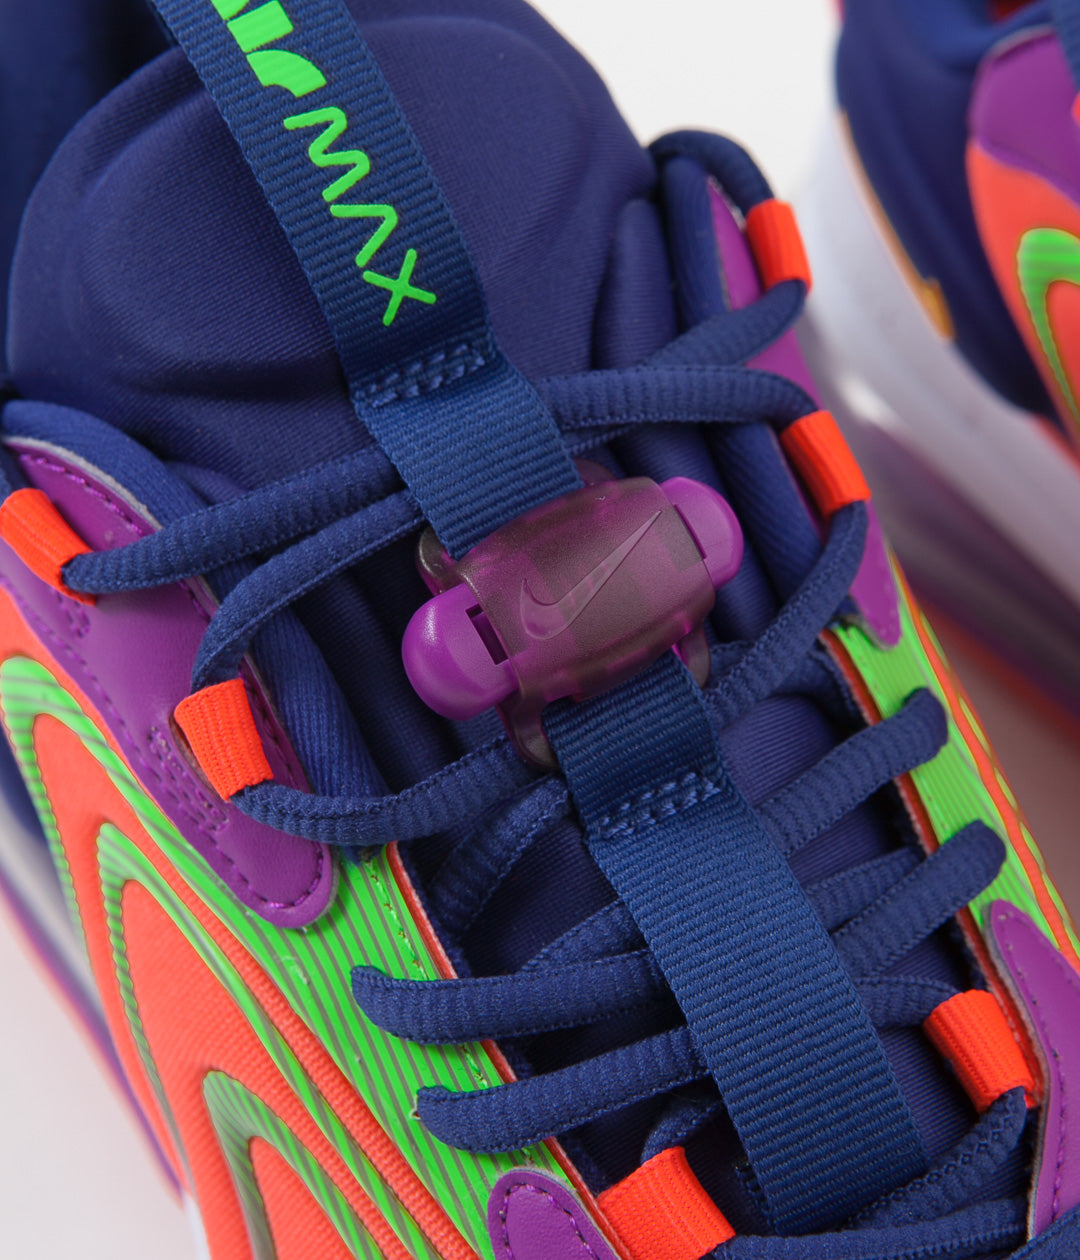 Nike Air Max 270 React Eng Men's Shoes Laser Crimson-Orange-Purple  cd0113-600 